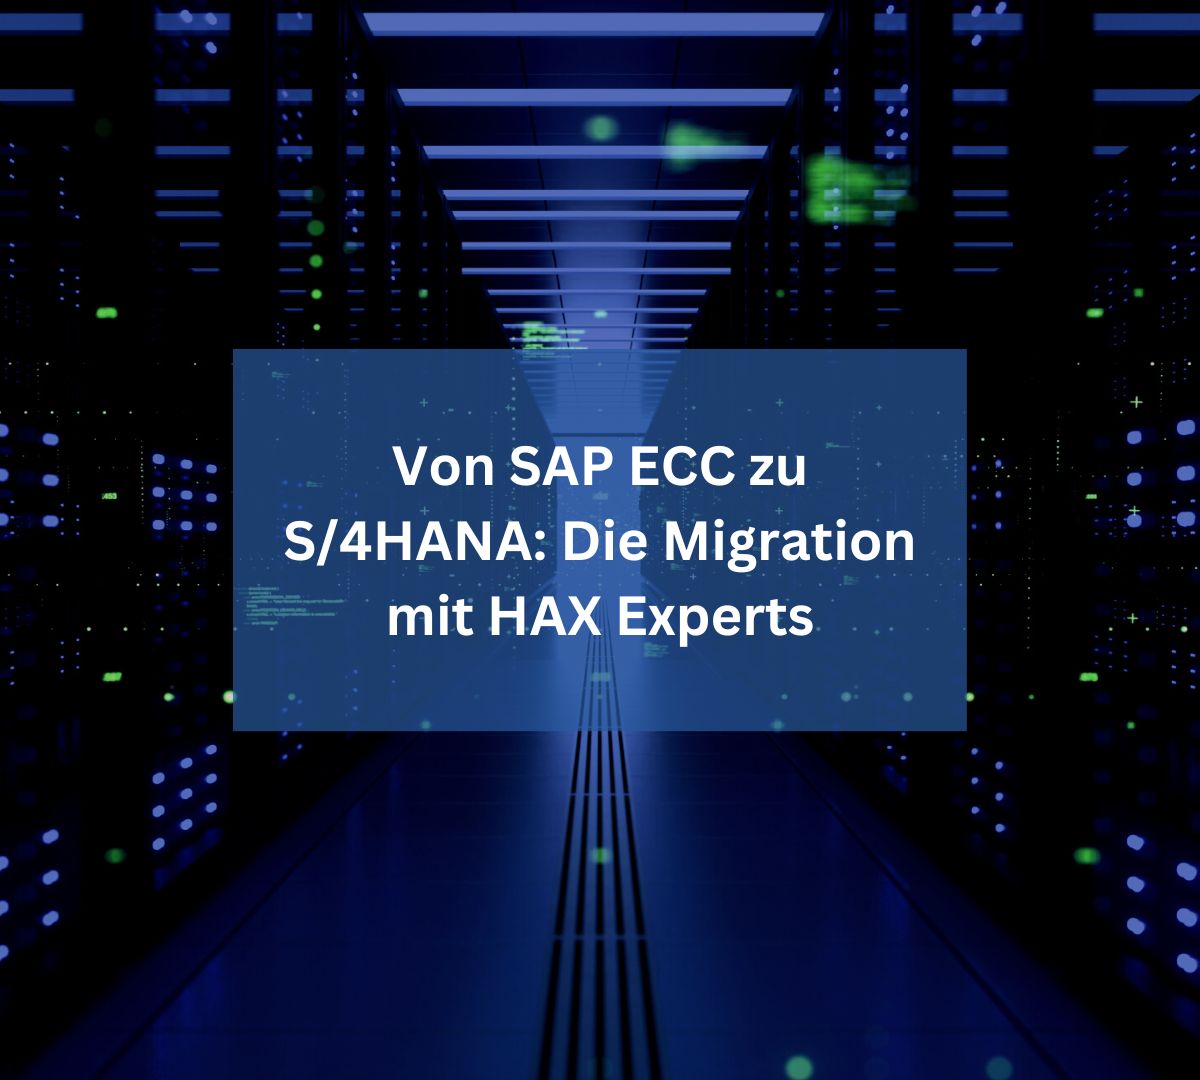 Von SAP ECC zu S/4HANA: Meistern Sie die Migration mit HAX Experts